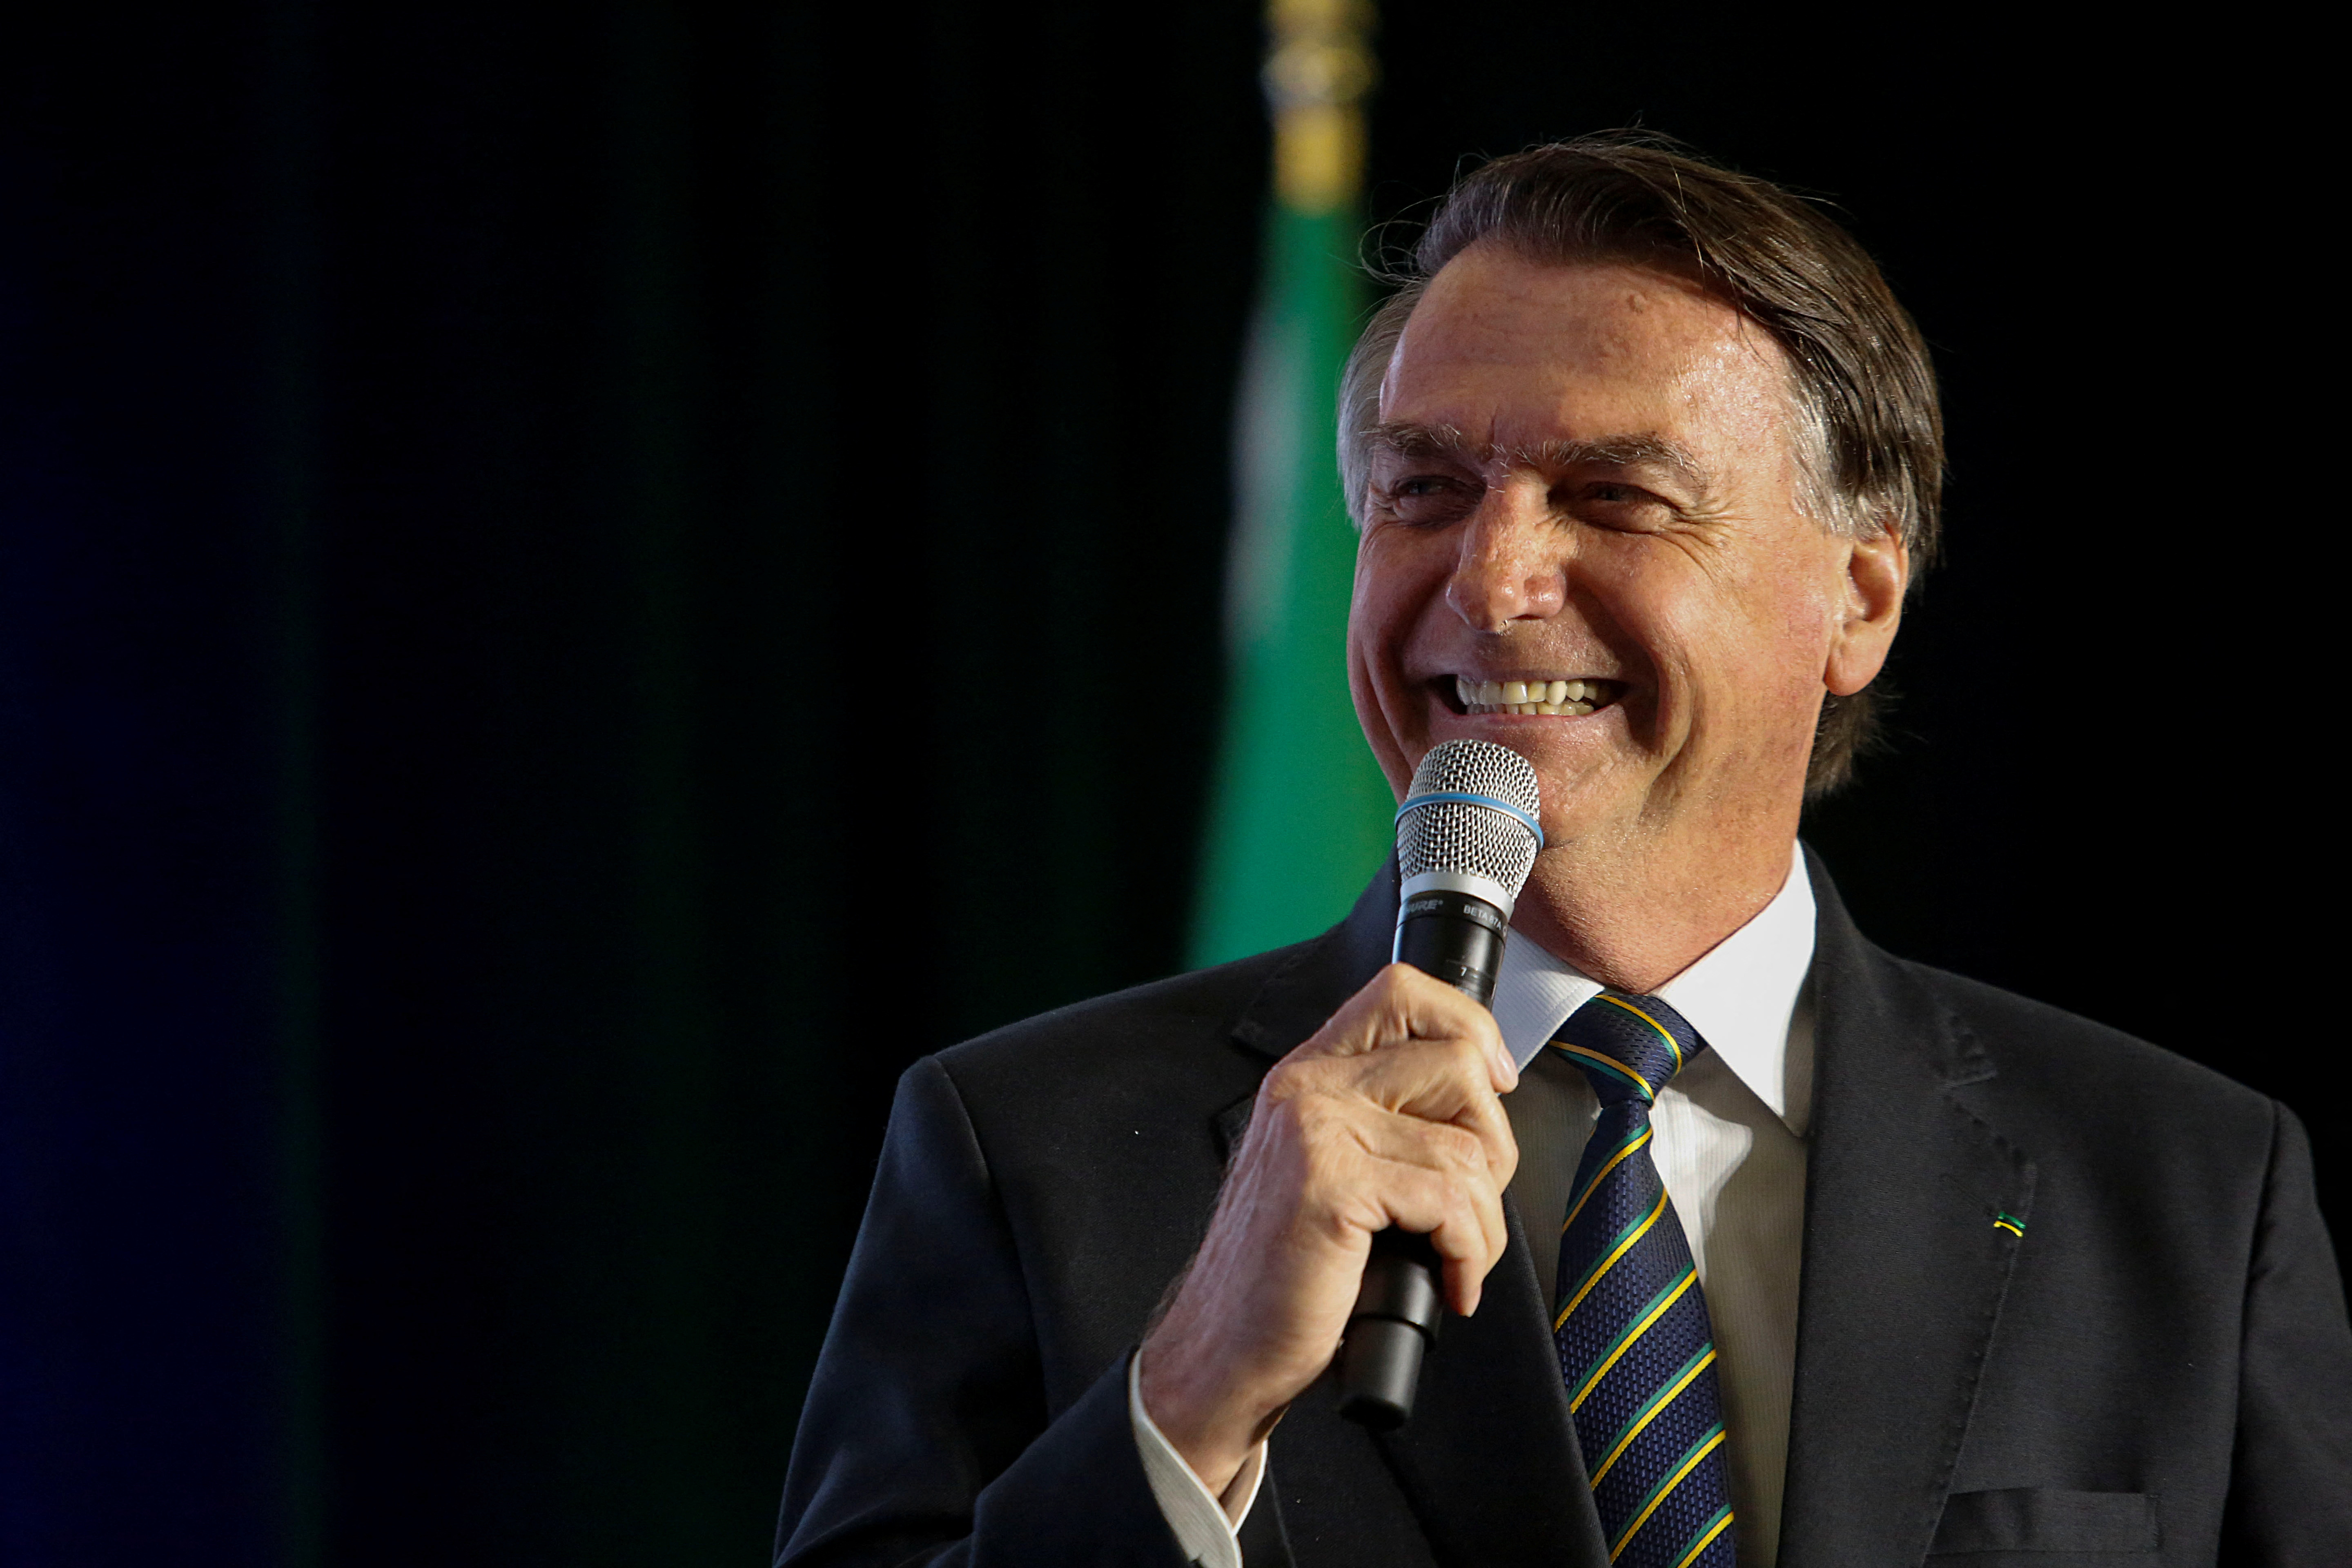 Bolsonaro participó en el evento “Power of the People” organizado por el grupo conservador Turning Point USA  (TPUSA) en un club de golf perteneciente al consorcio empresarial de Donald Trump, ex presidente de EEUU. (REUTERS)